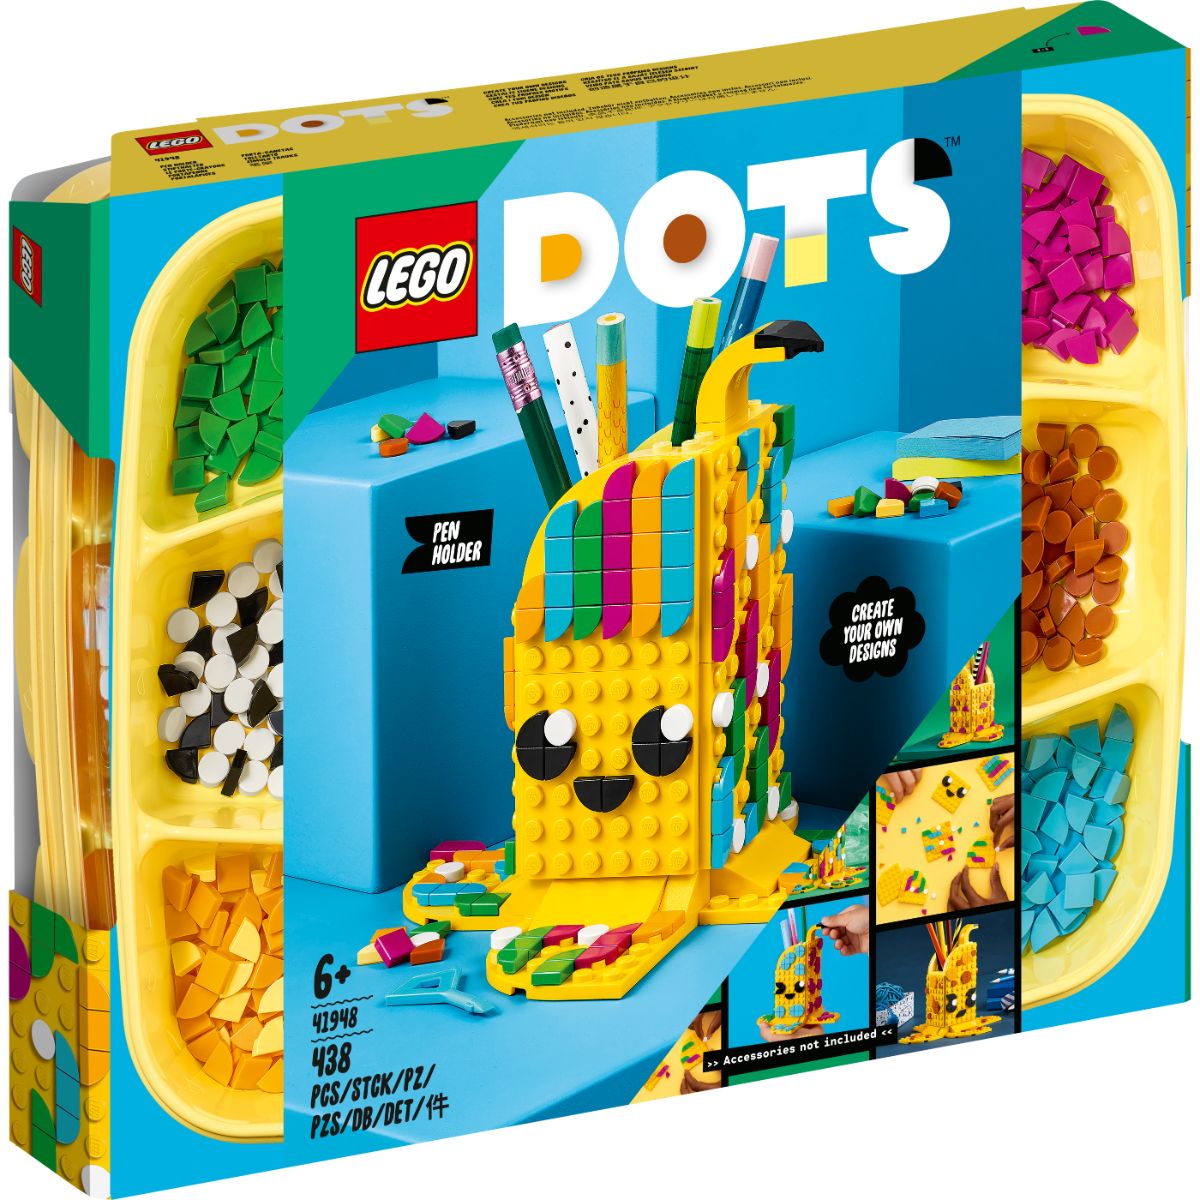 LEGO® Dots – Suport Pentru Pixuri (41948) (41948) imagine 2022 protejamcopilaria.ro